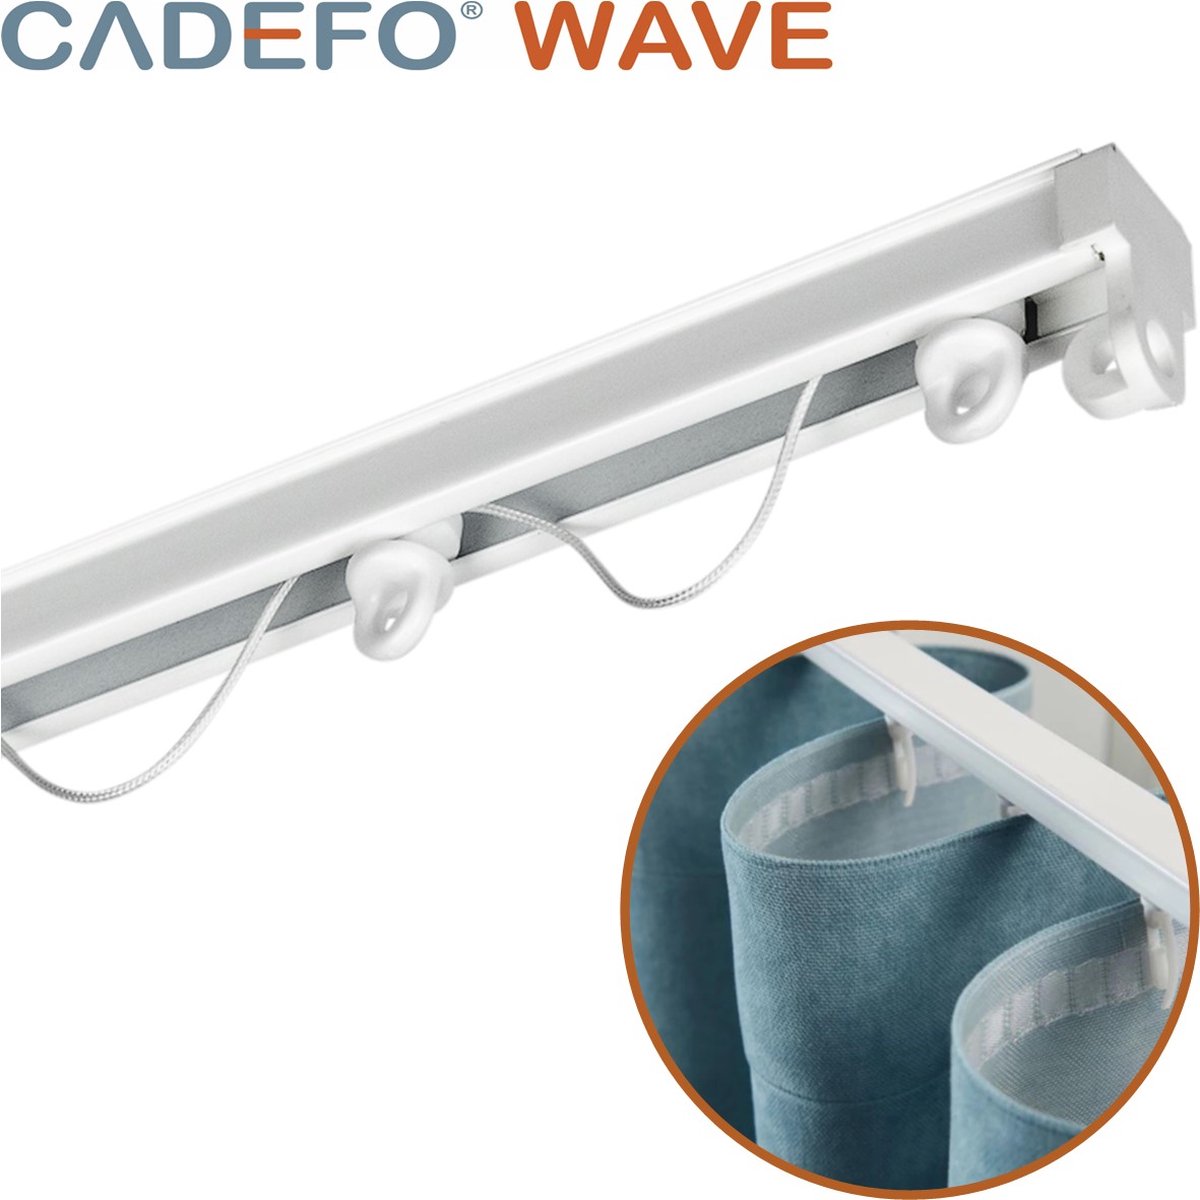 CADEFO WAVE (551 - 600 cm) Gordijnrails - Compleet op maat! - UIT 1 STUK - Leverbaar tot 6 meter - Plafondbevestiging - Lengte 566 cm